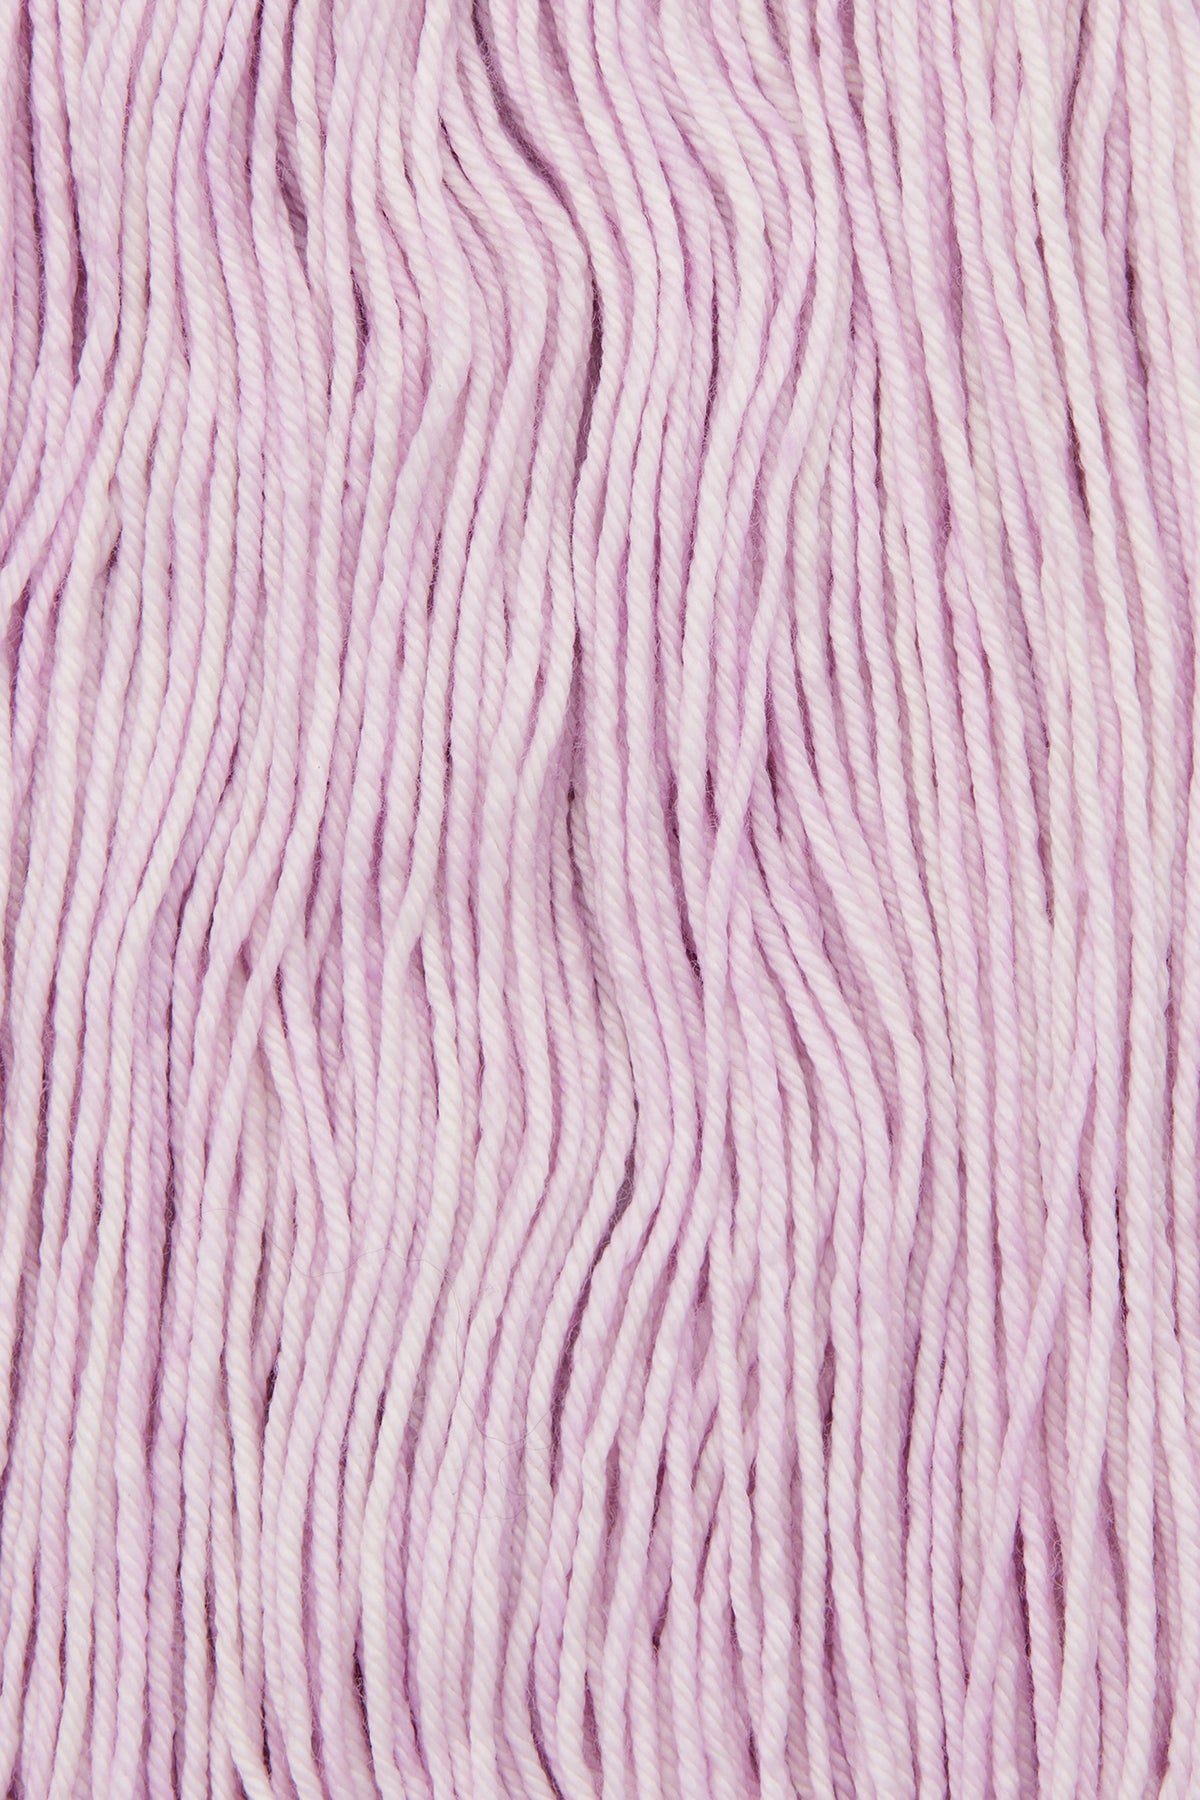 Yarn Skein - Lilac